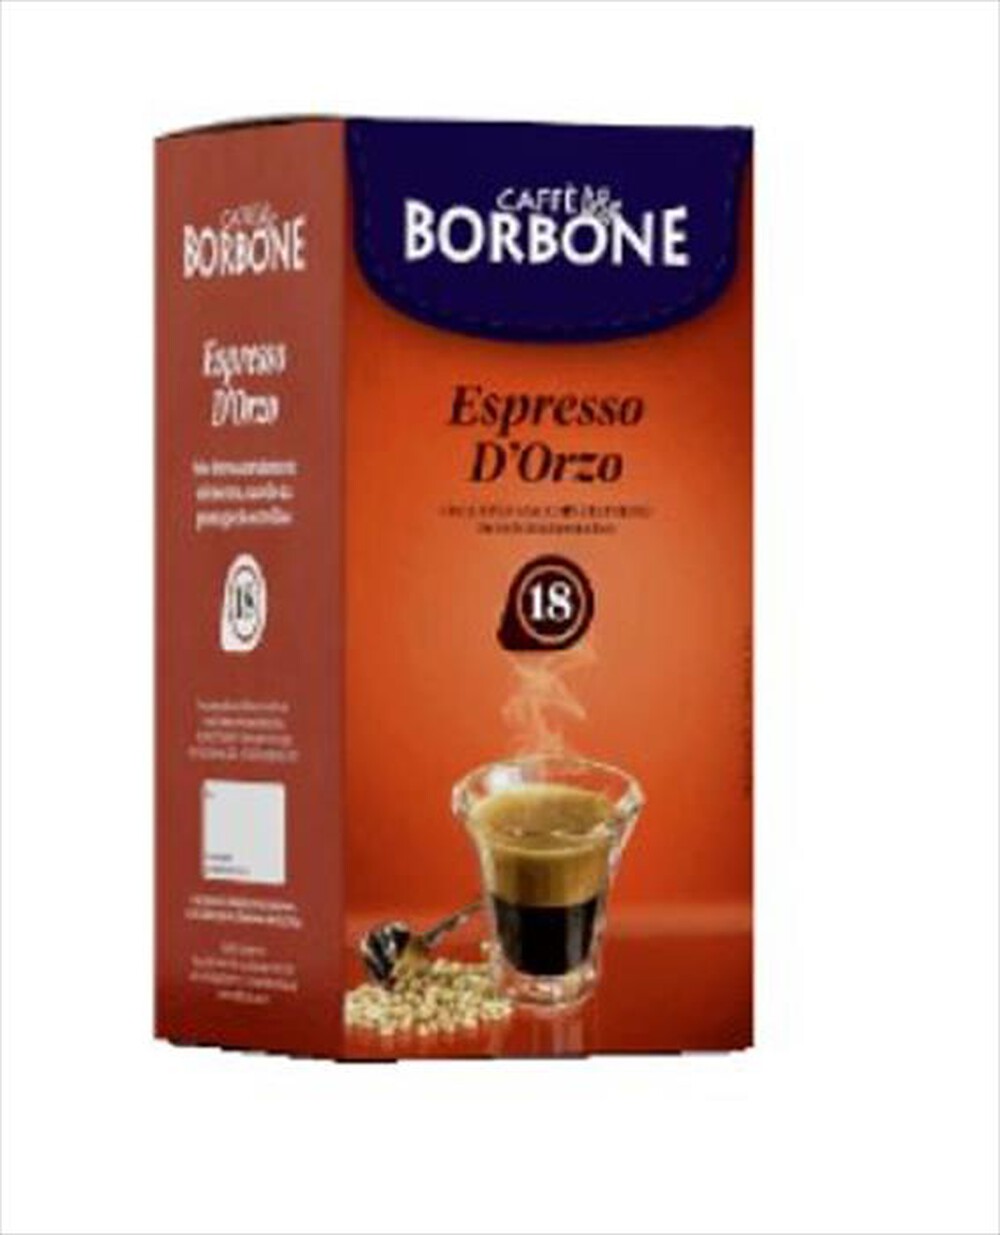 "CAFFE BORBONE - Espresso d'Orzo - 18 pz"